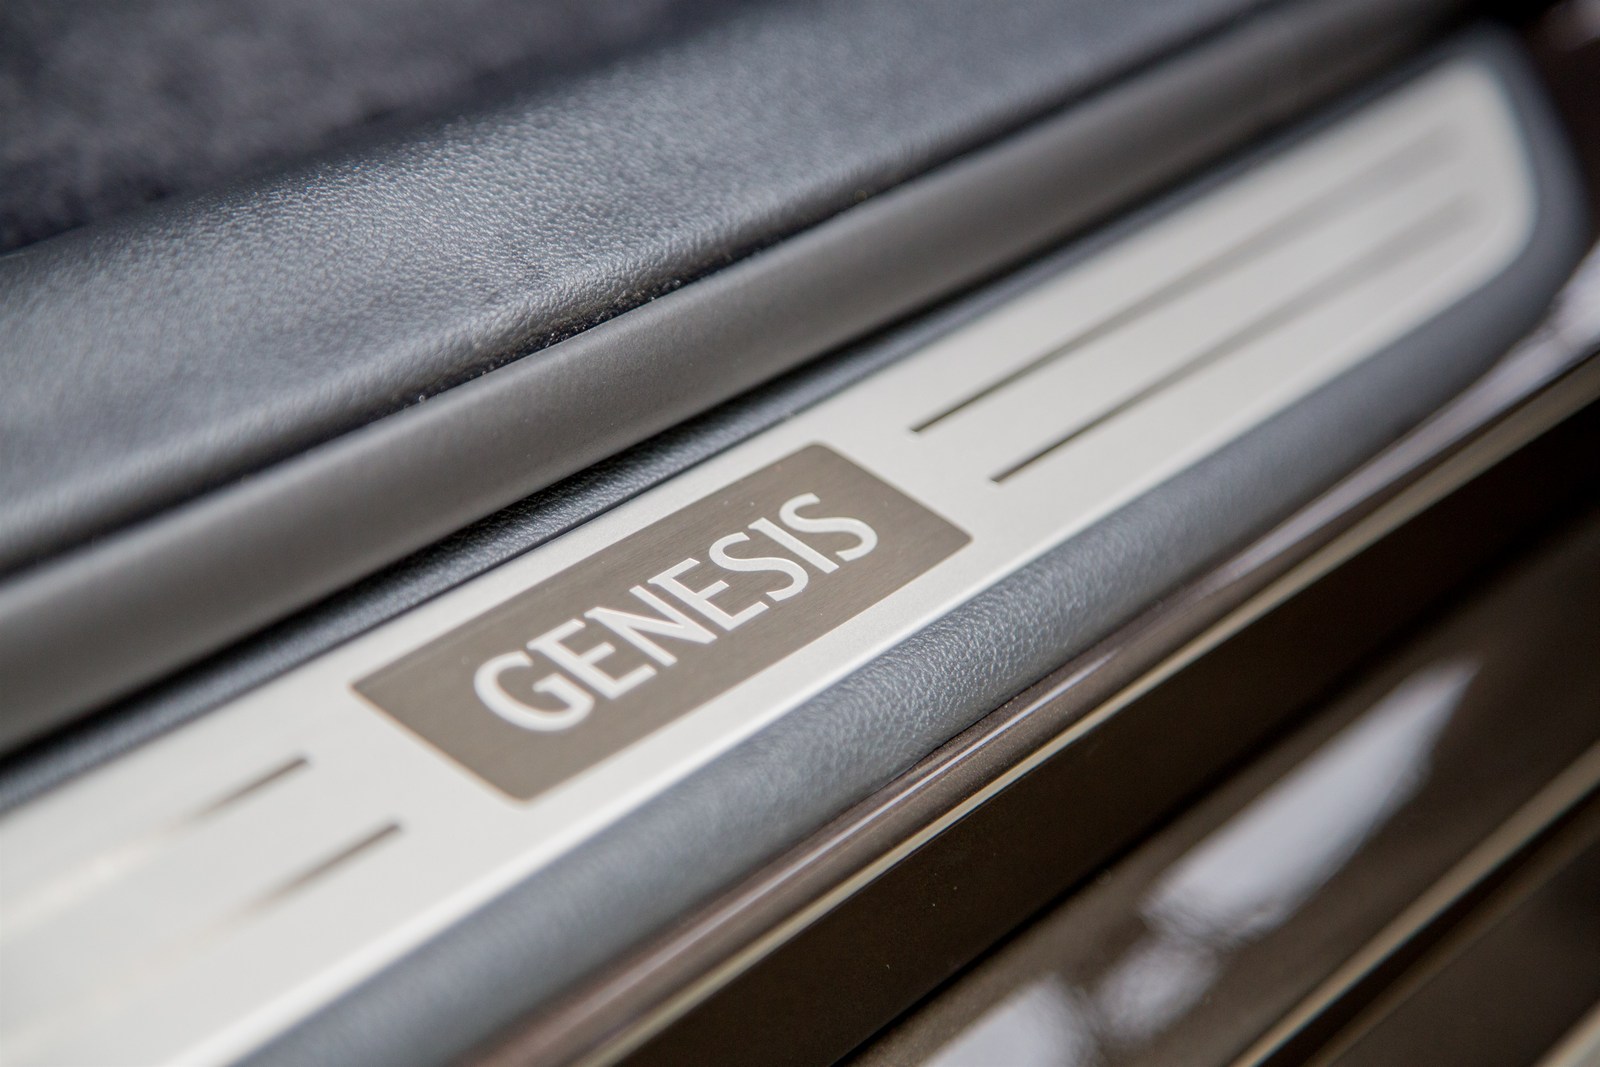 2017 Genesis G90